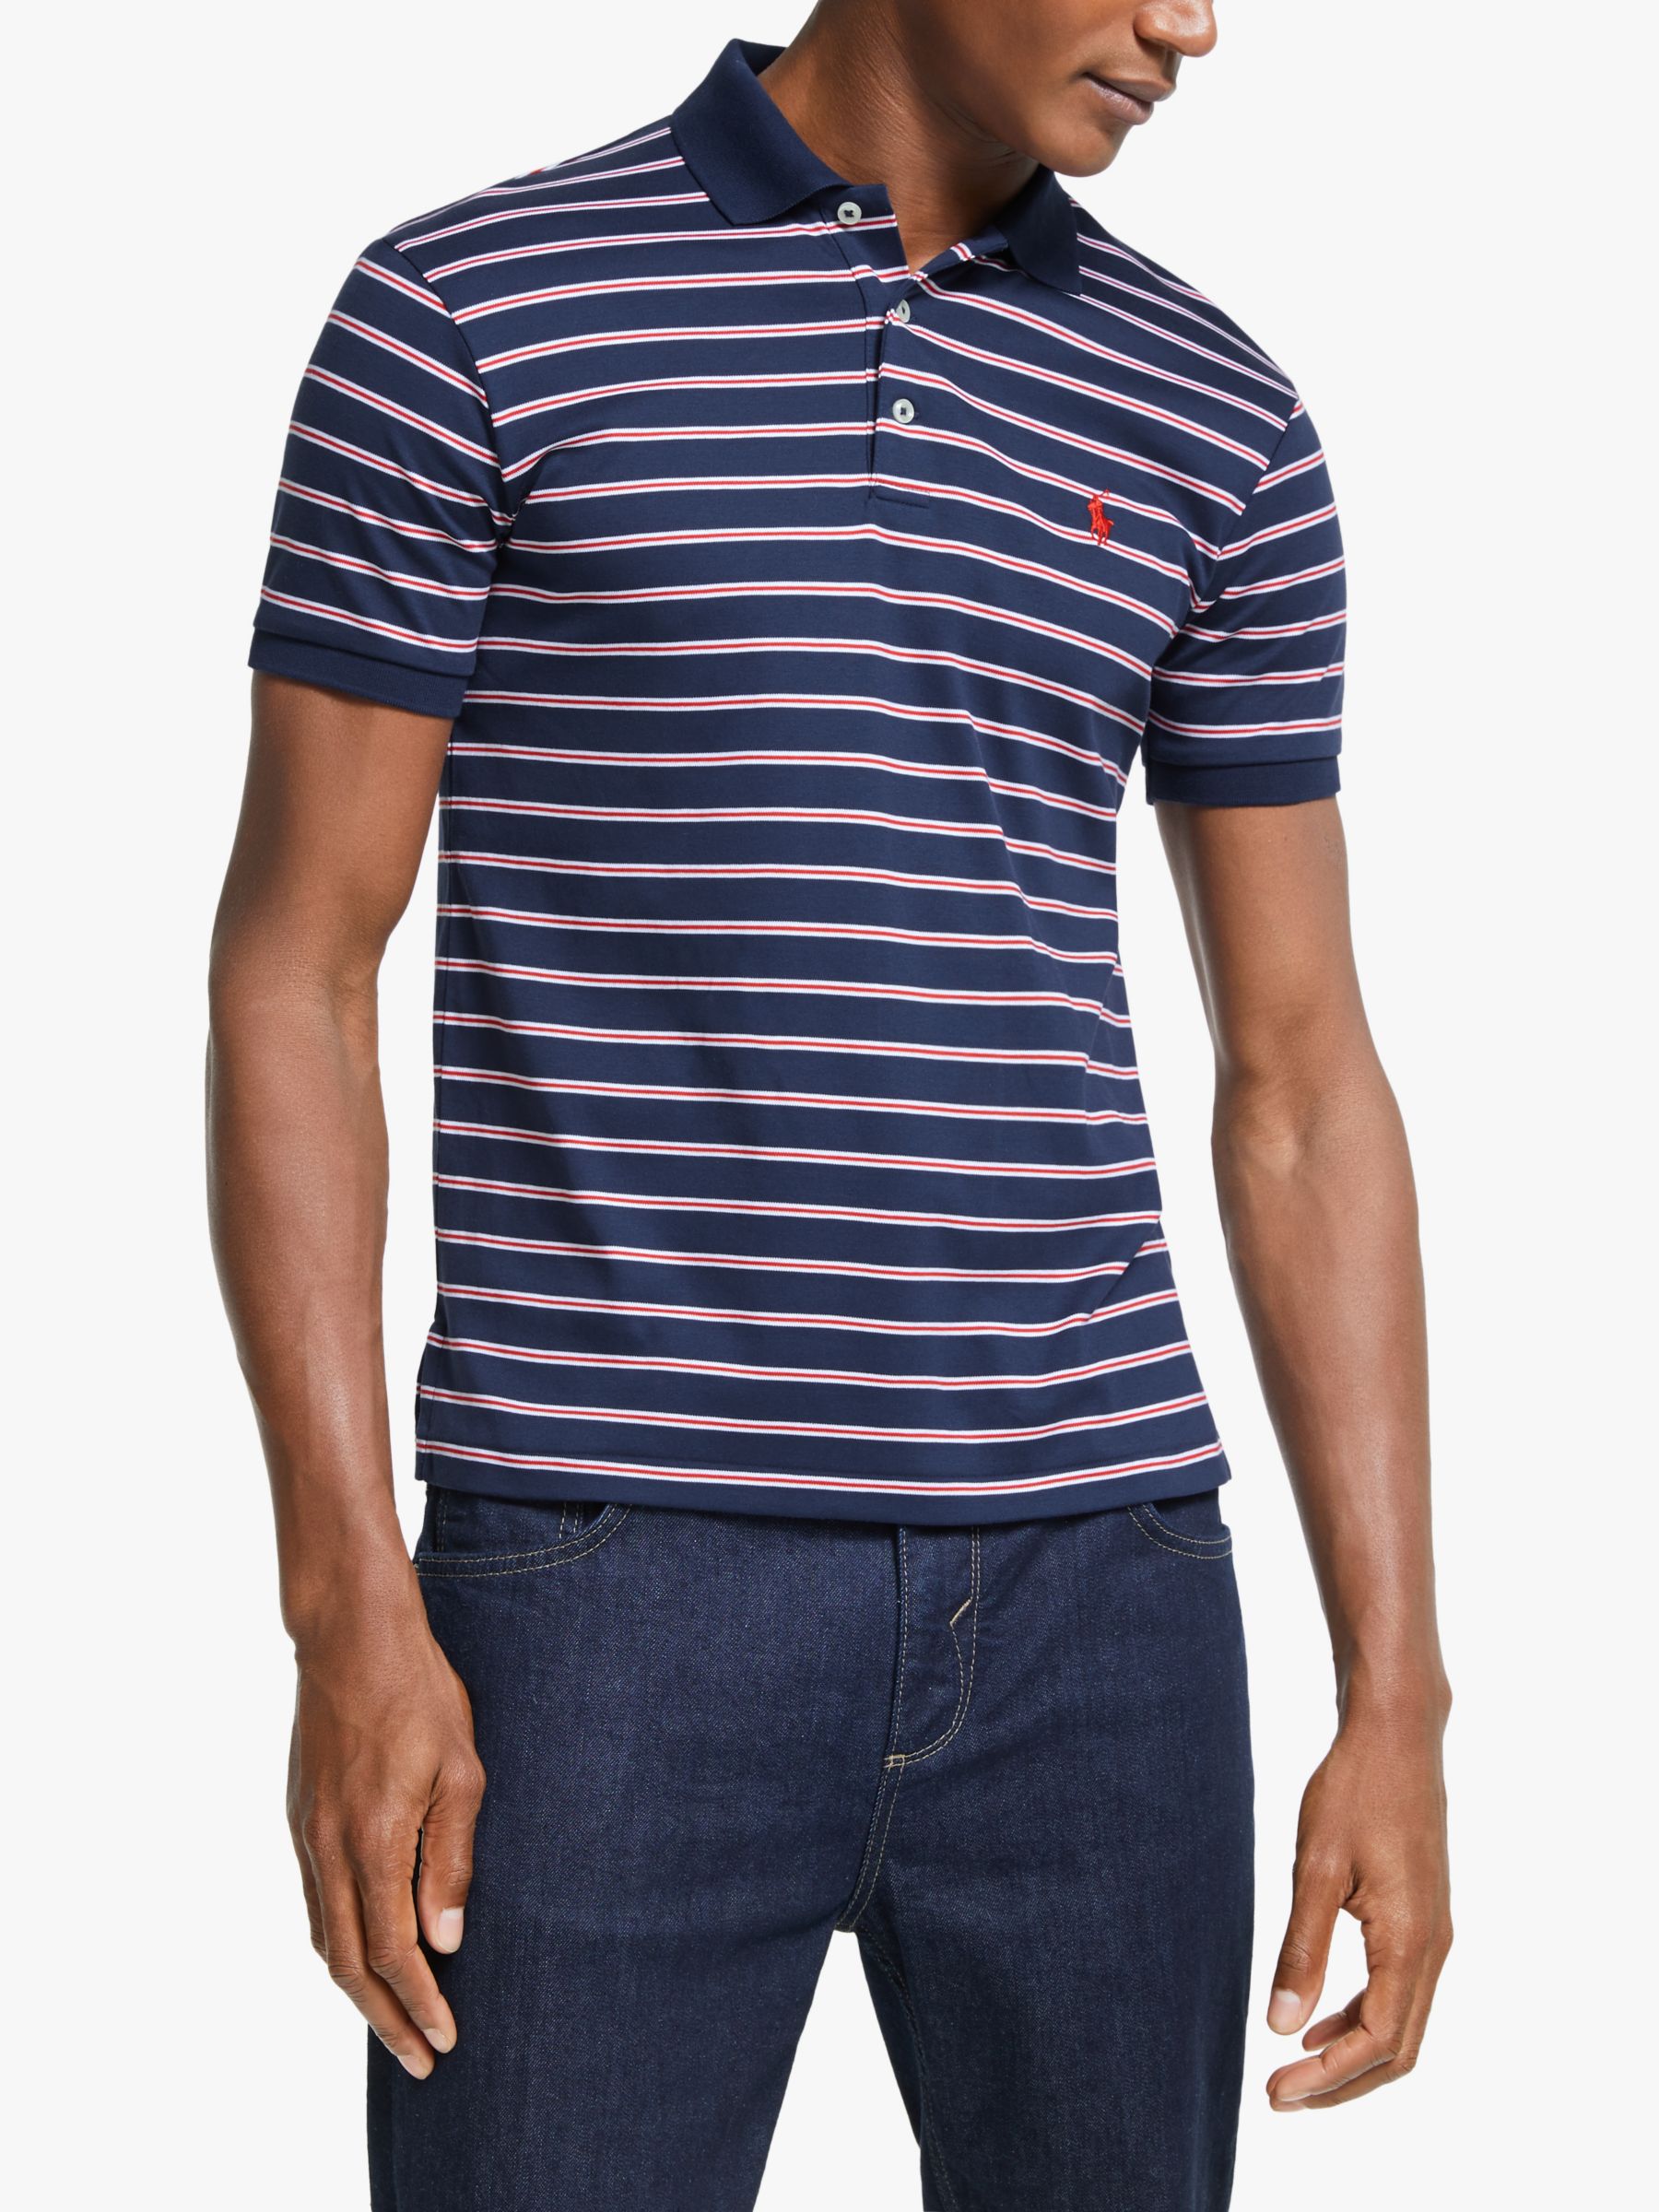 ralph lauren navy striped shirt